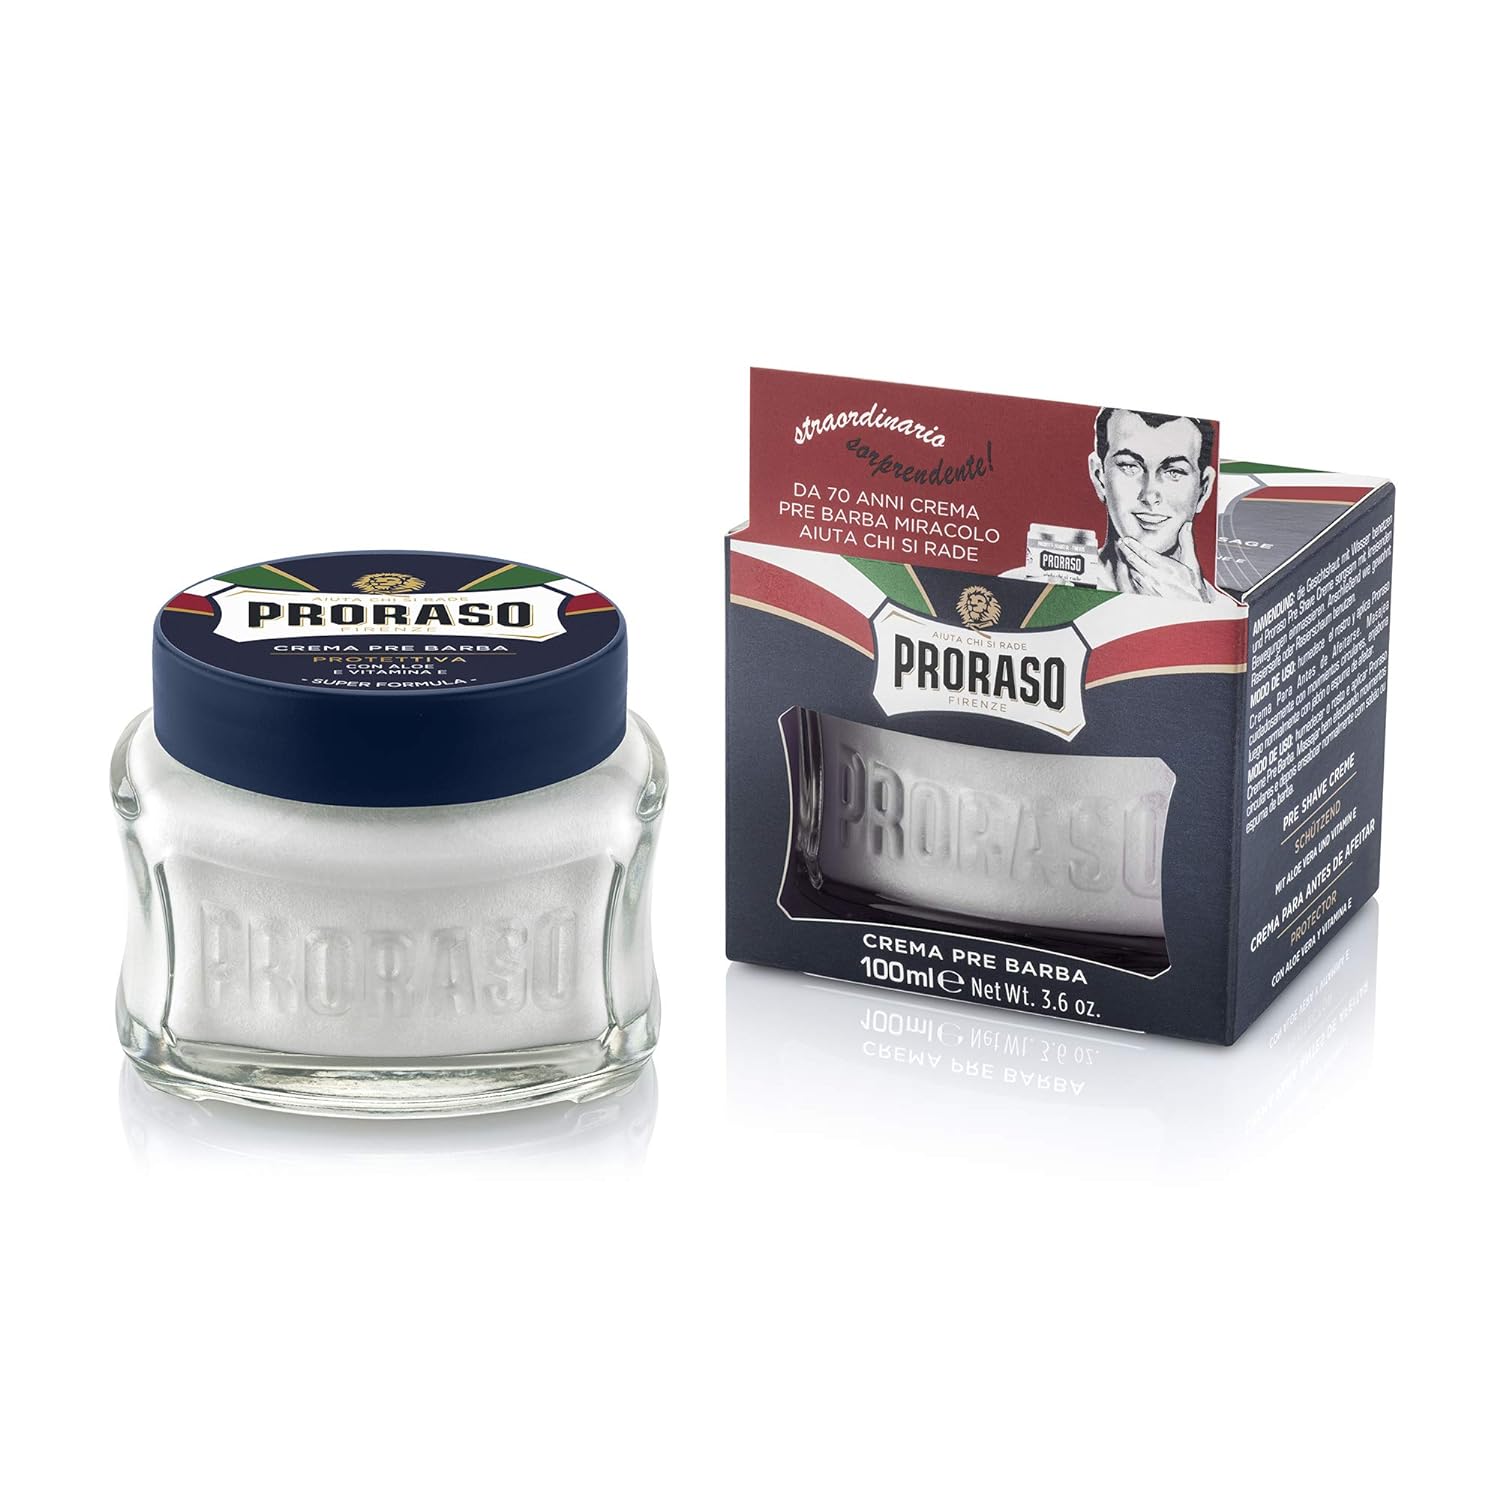 Proraso Pre-Shave Conditioning Cream for Men, Protective Formula for Dry Skin with Vitamin E and Aloe Vera, 3.6 oz